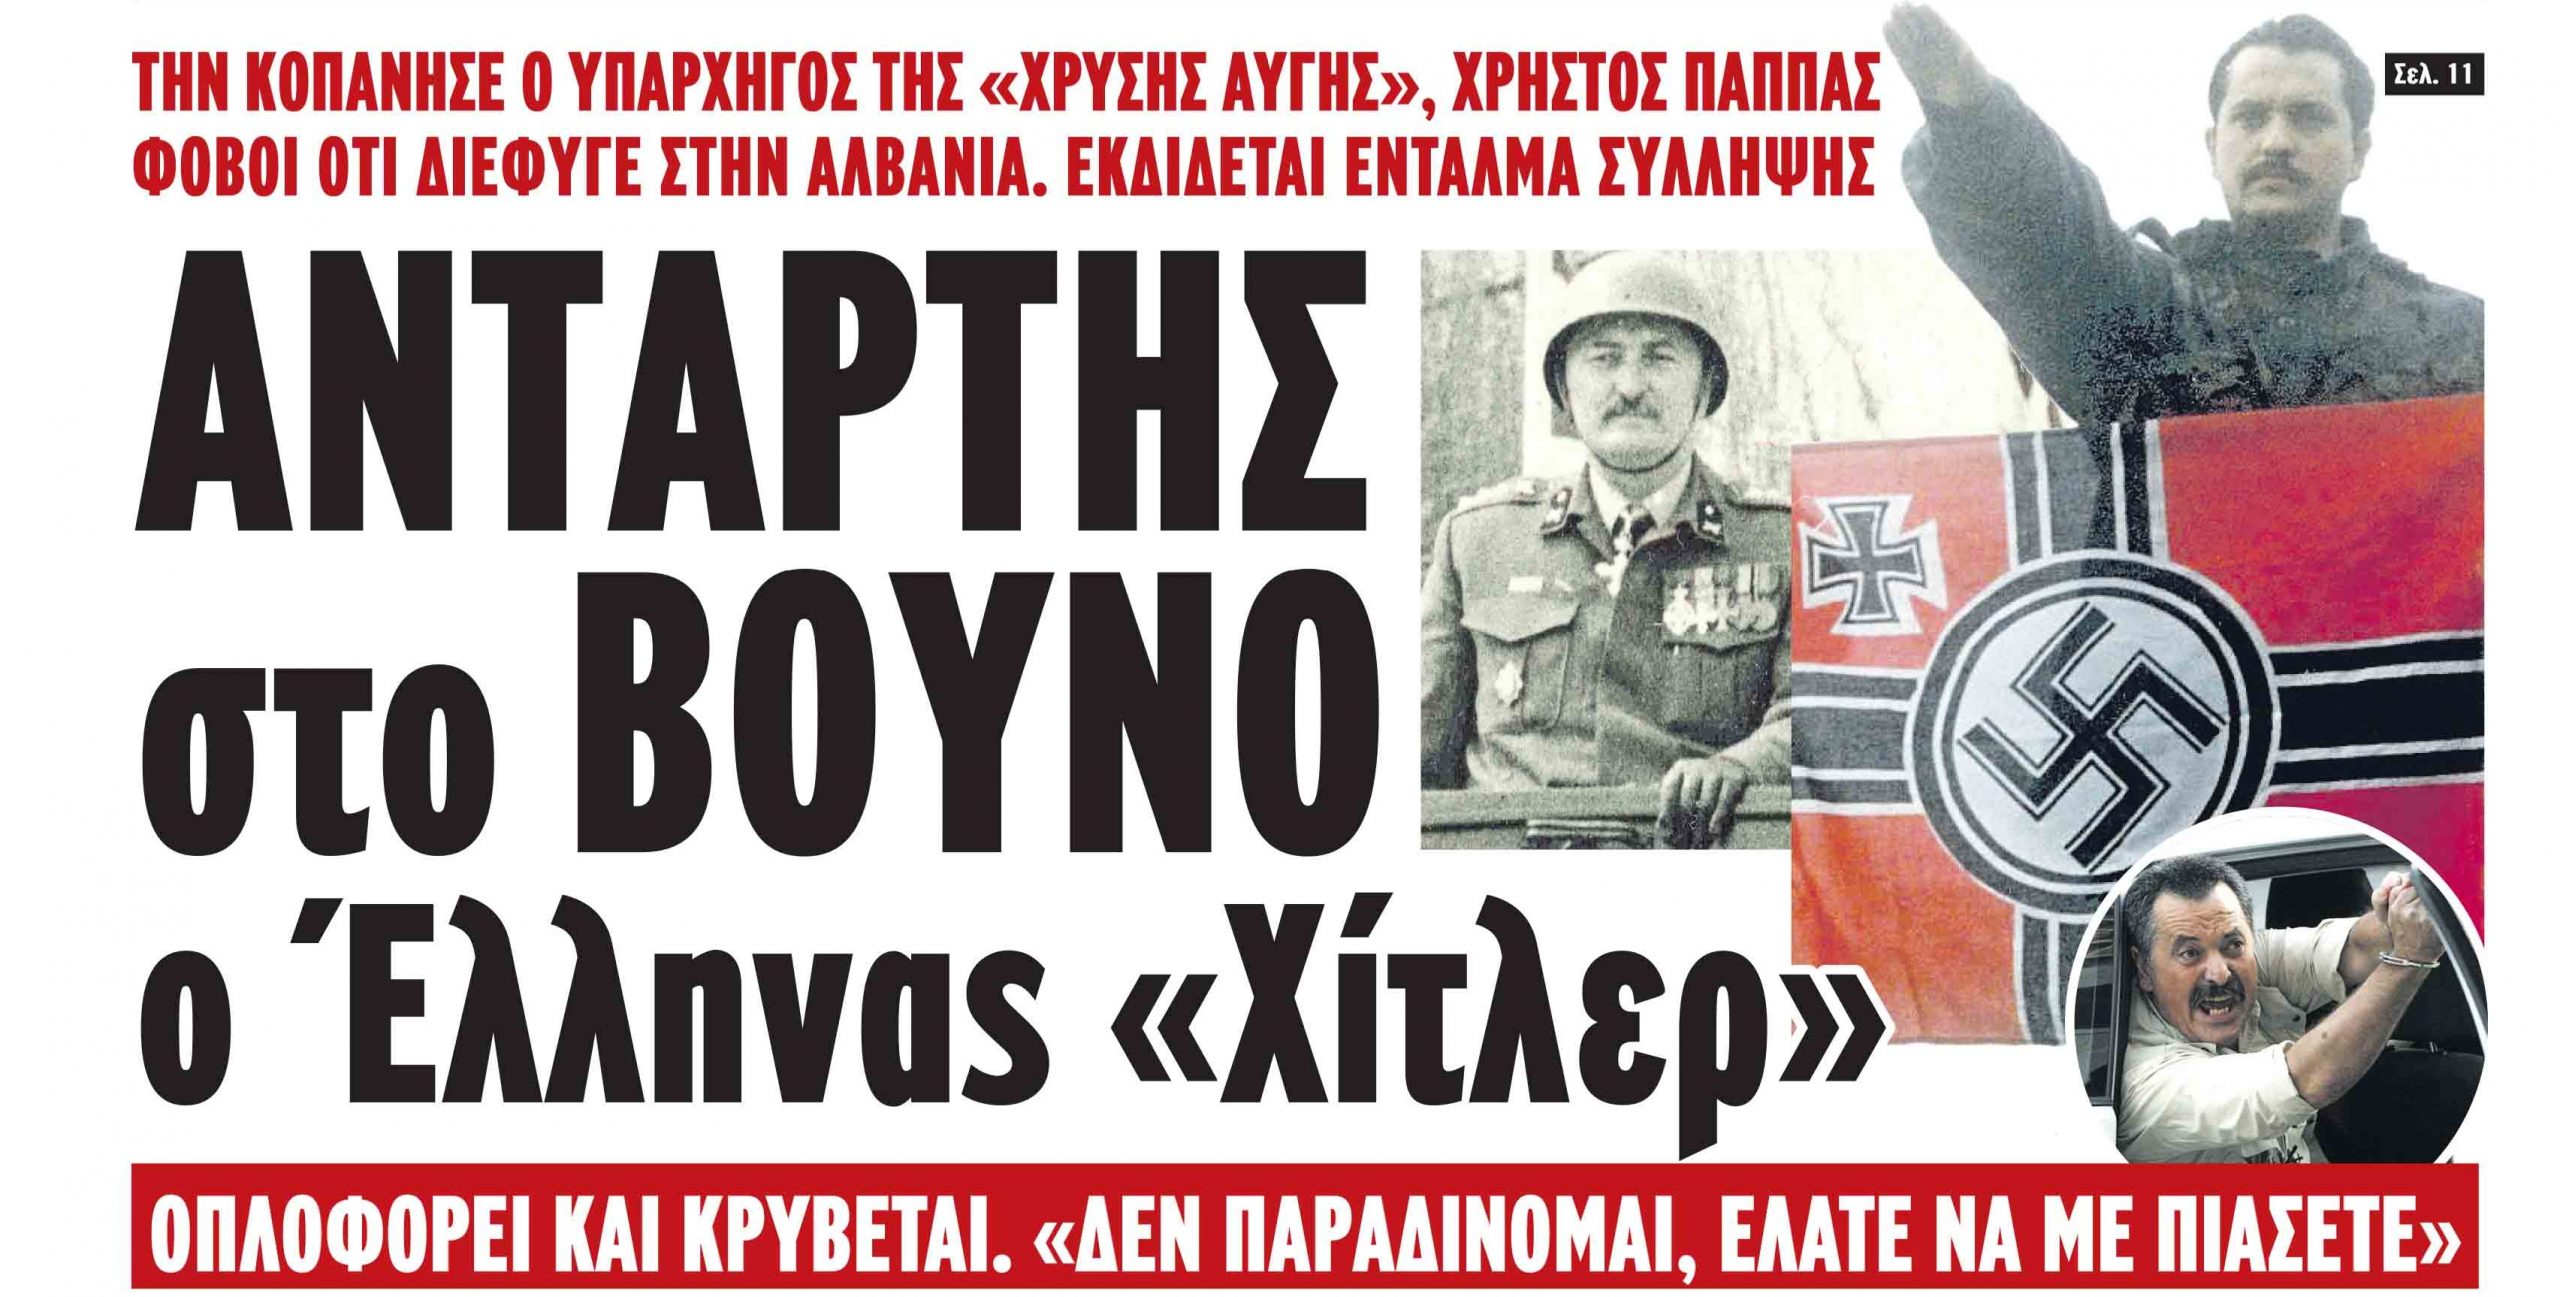 Arratiset Hristos Papas! Gazeta greke: Mendohet se ka hyrë në Shqipëri i armatosur